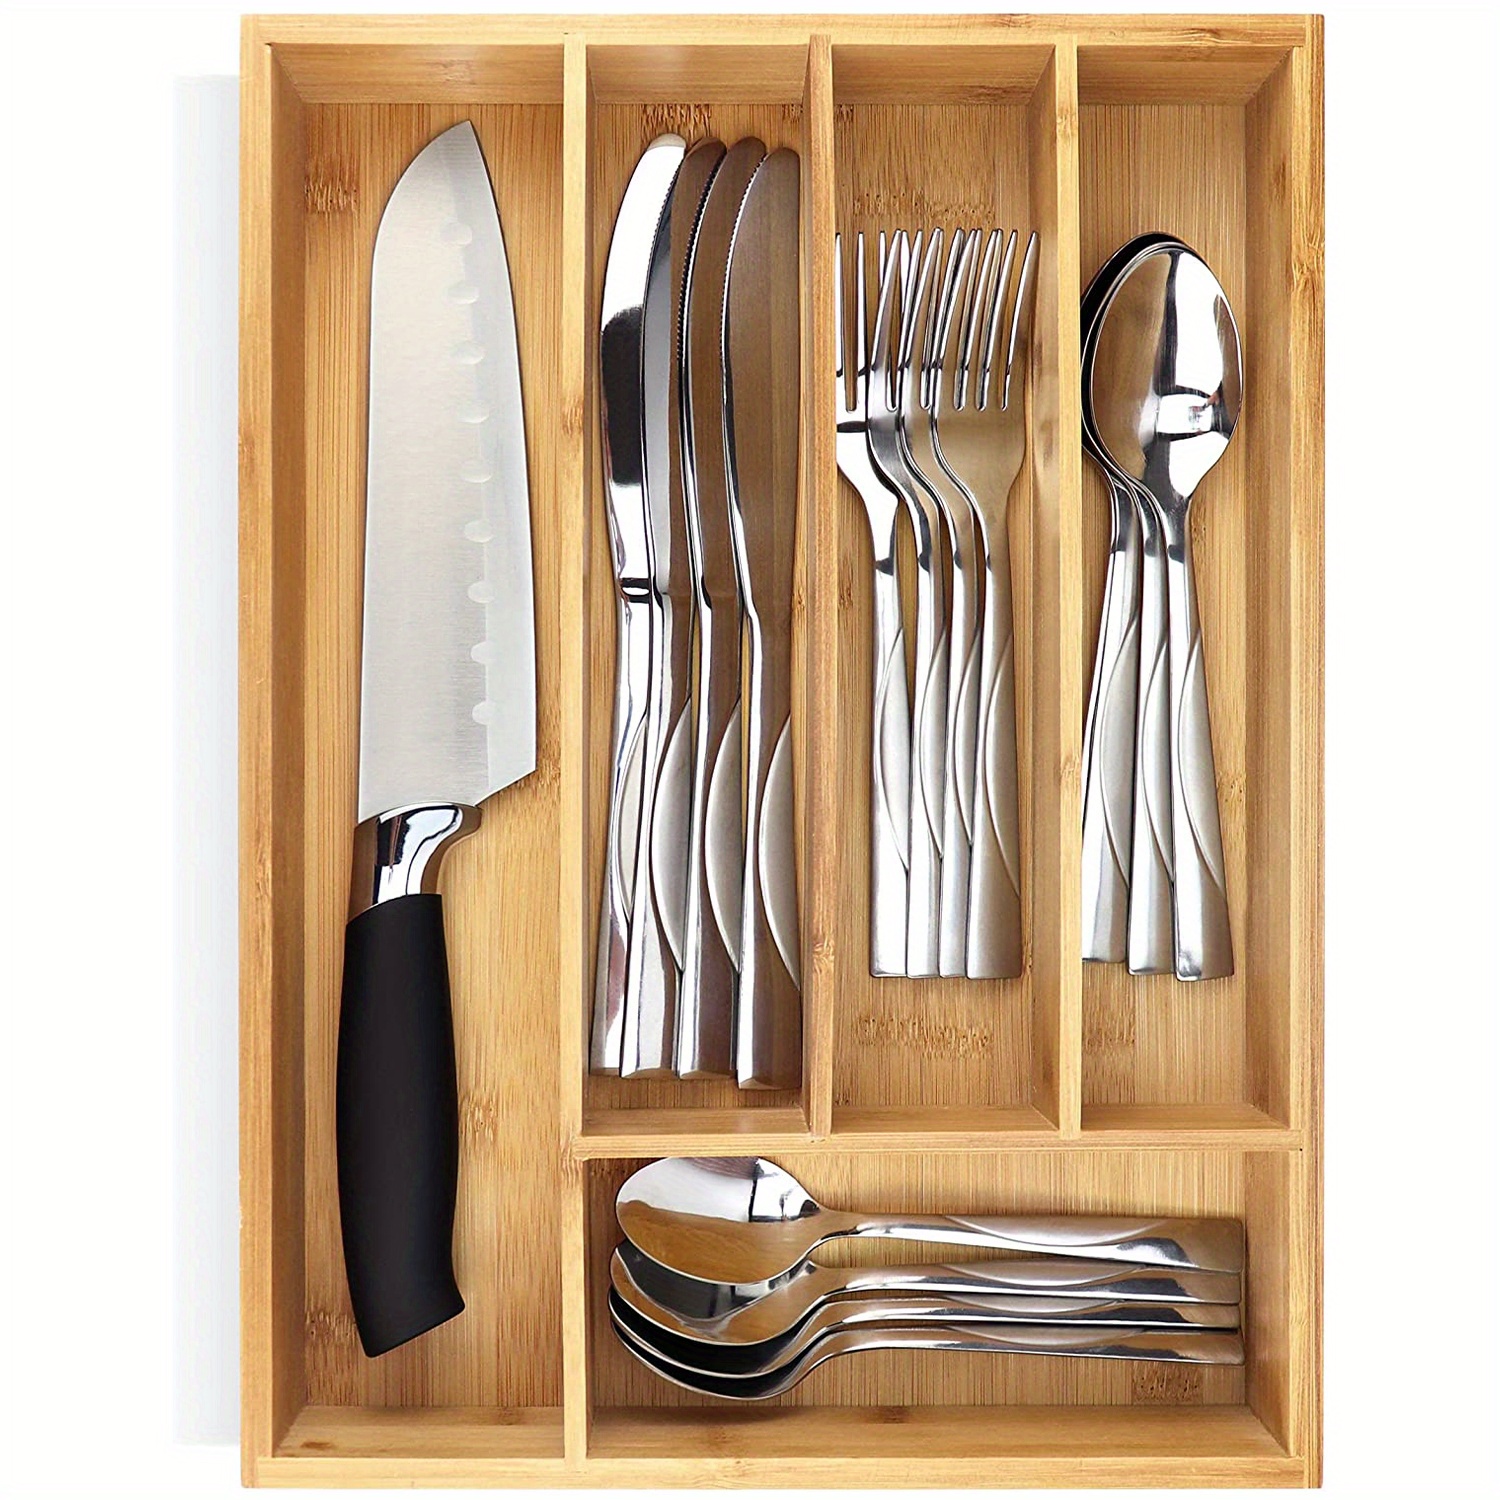  SpaceAid Organizador de cajones de bambú, soporte para cuchillos  de cocina, bloque organizador para cajones en organización de  almacenamiento (pequeño) : Hogar y Cocina